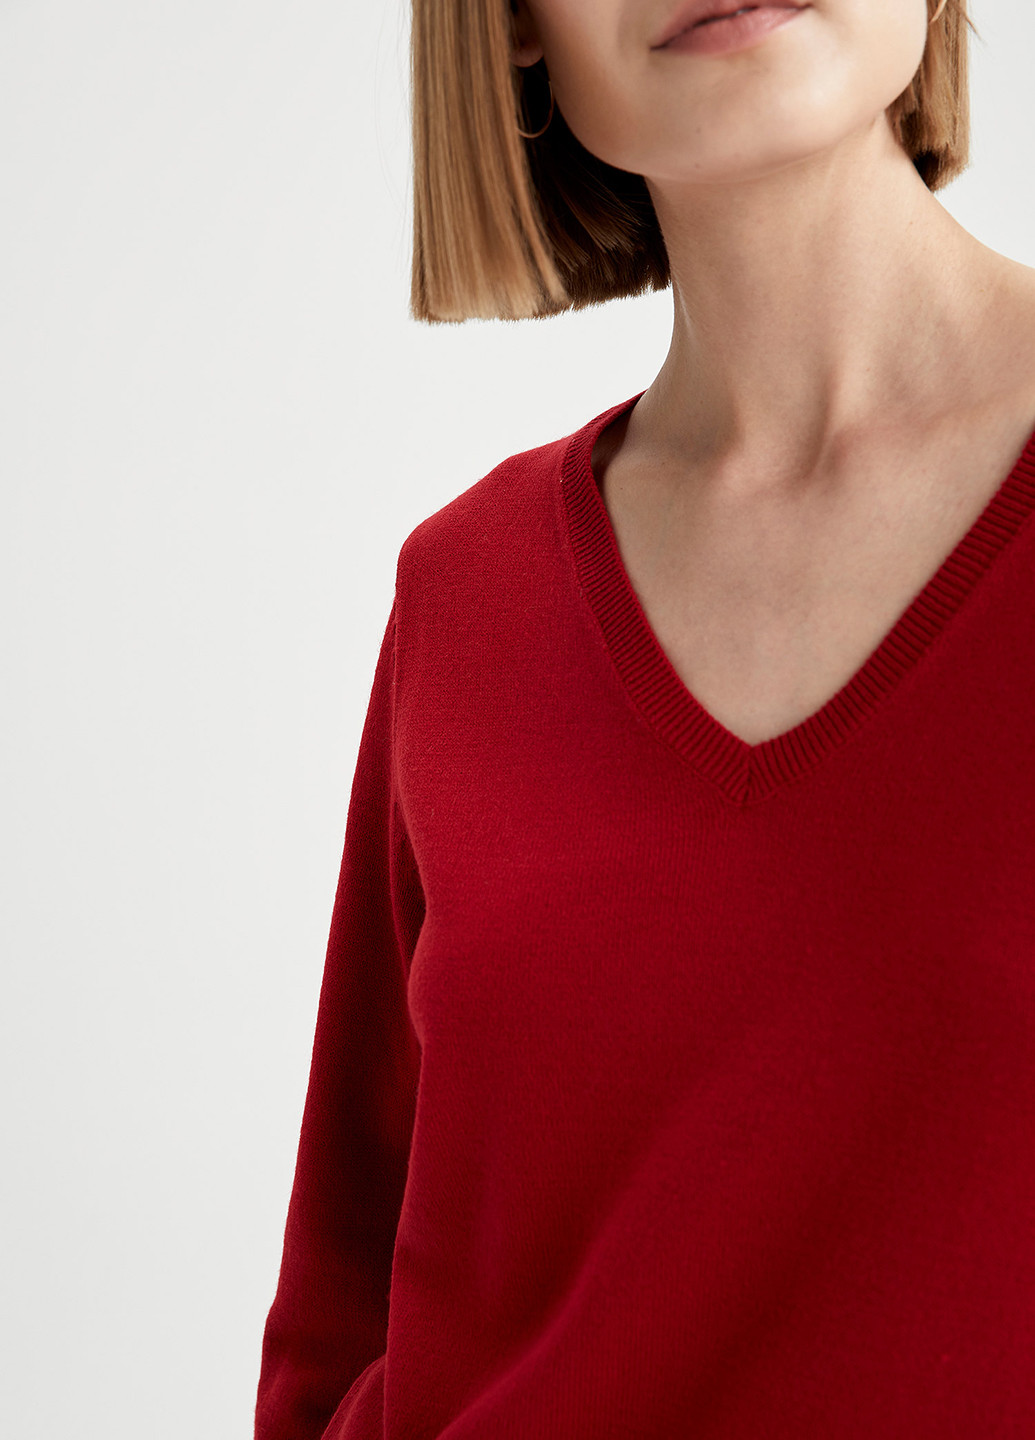 Красный демисезонный пуловер пуловер DeFacto